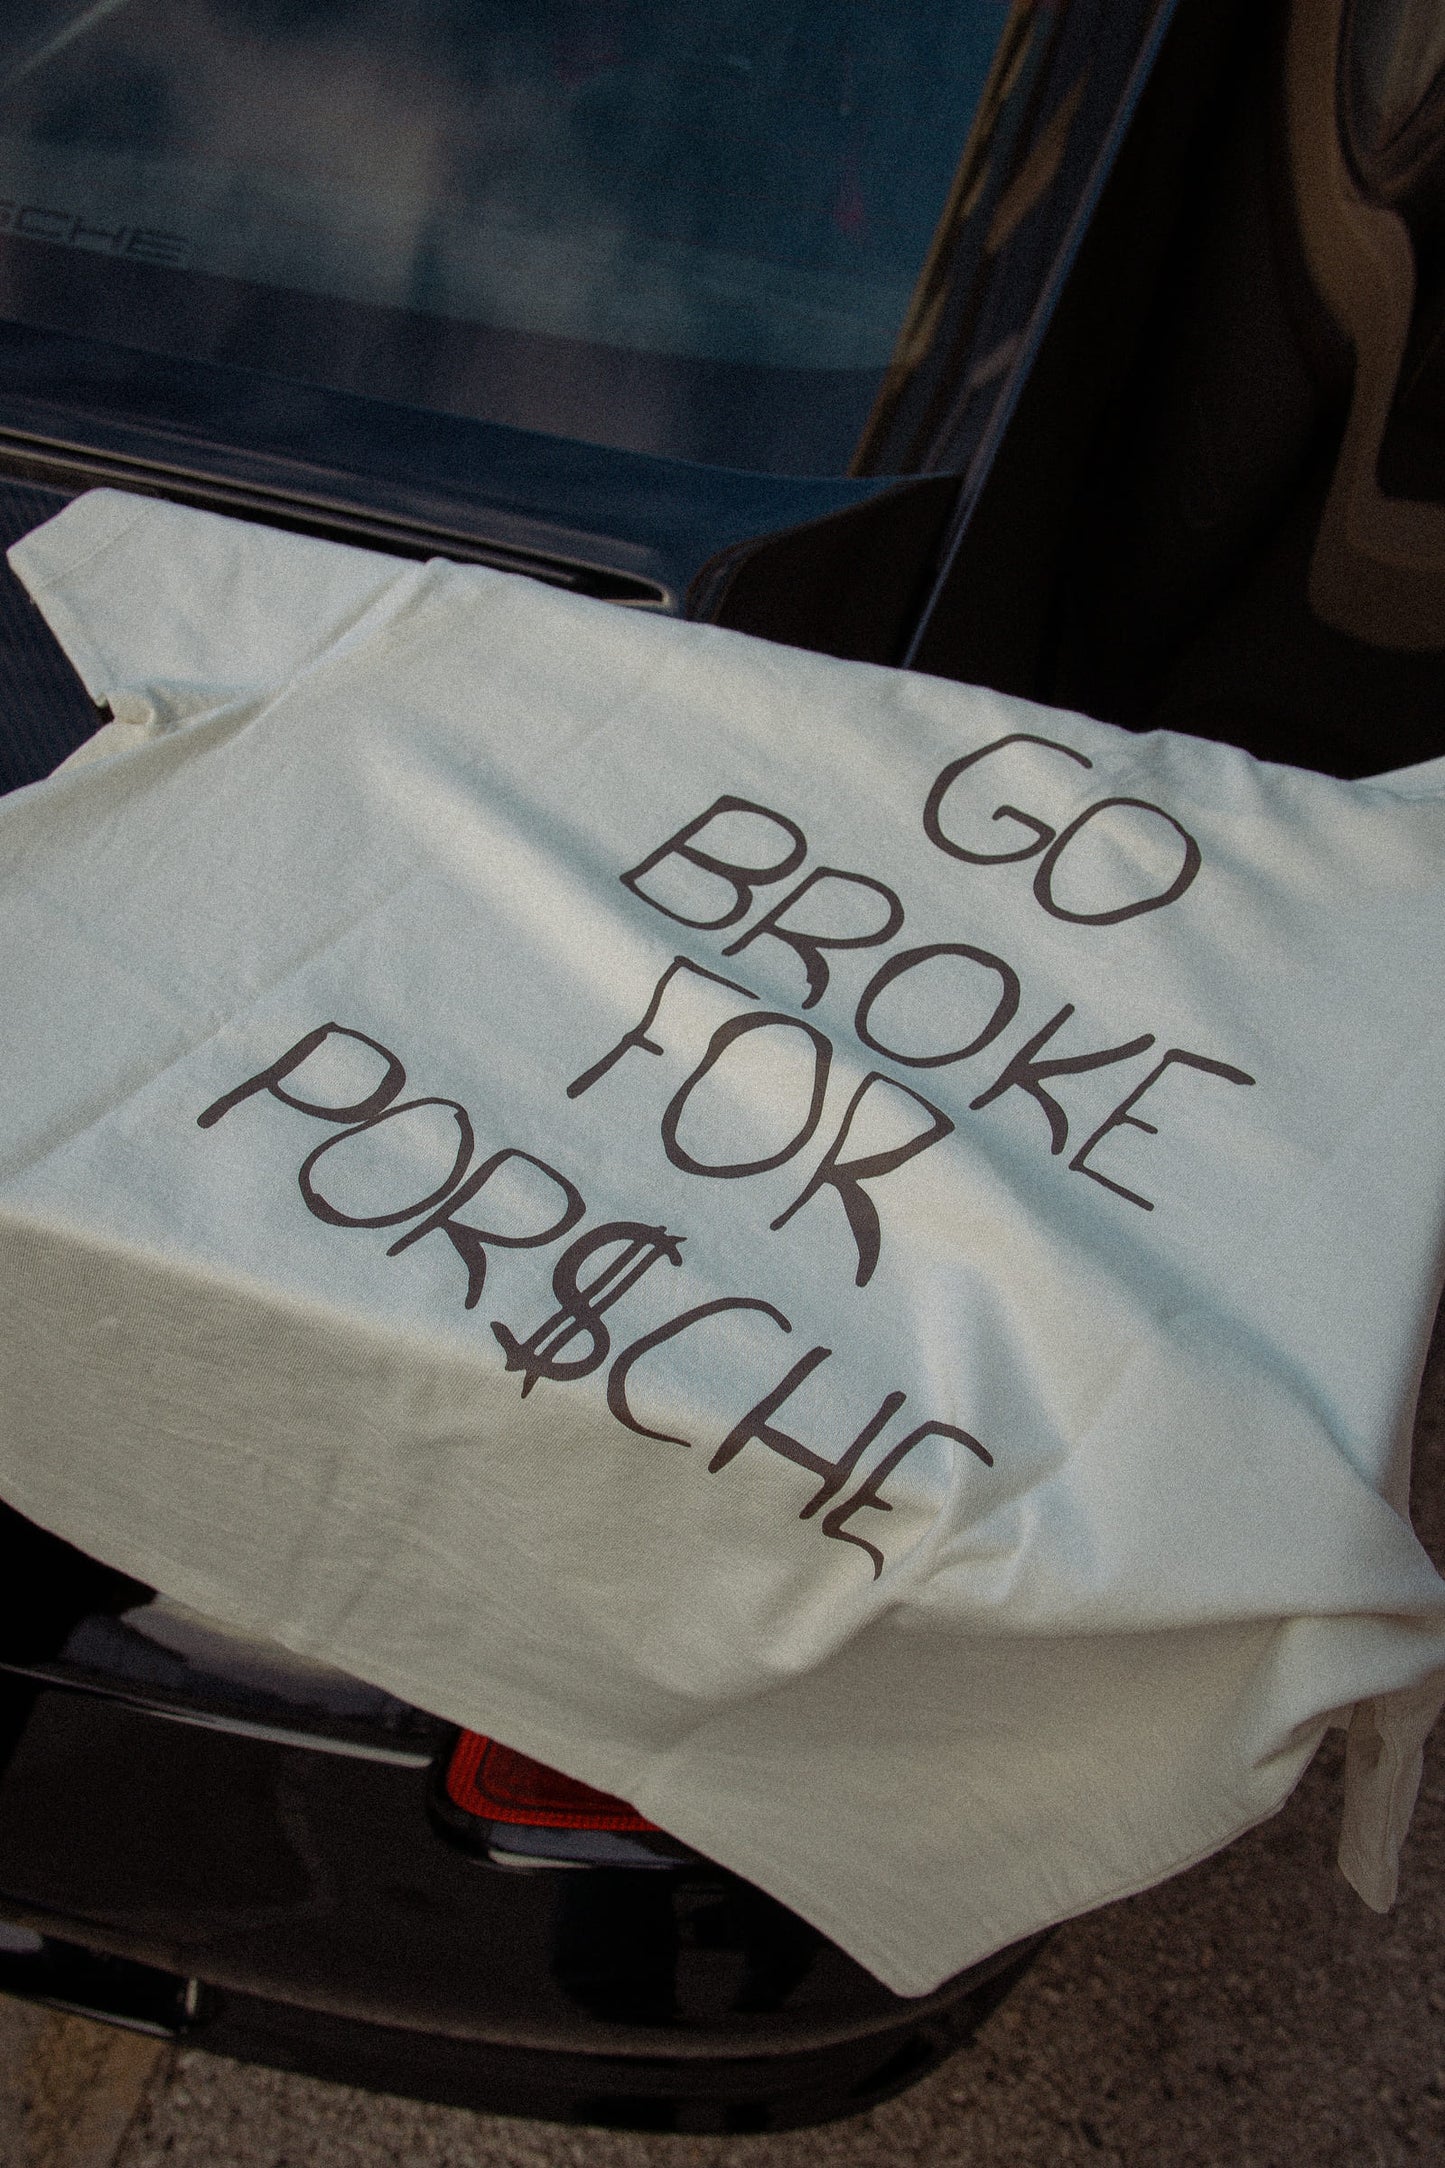 T-Shirt "Go Broke For Porsche"